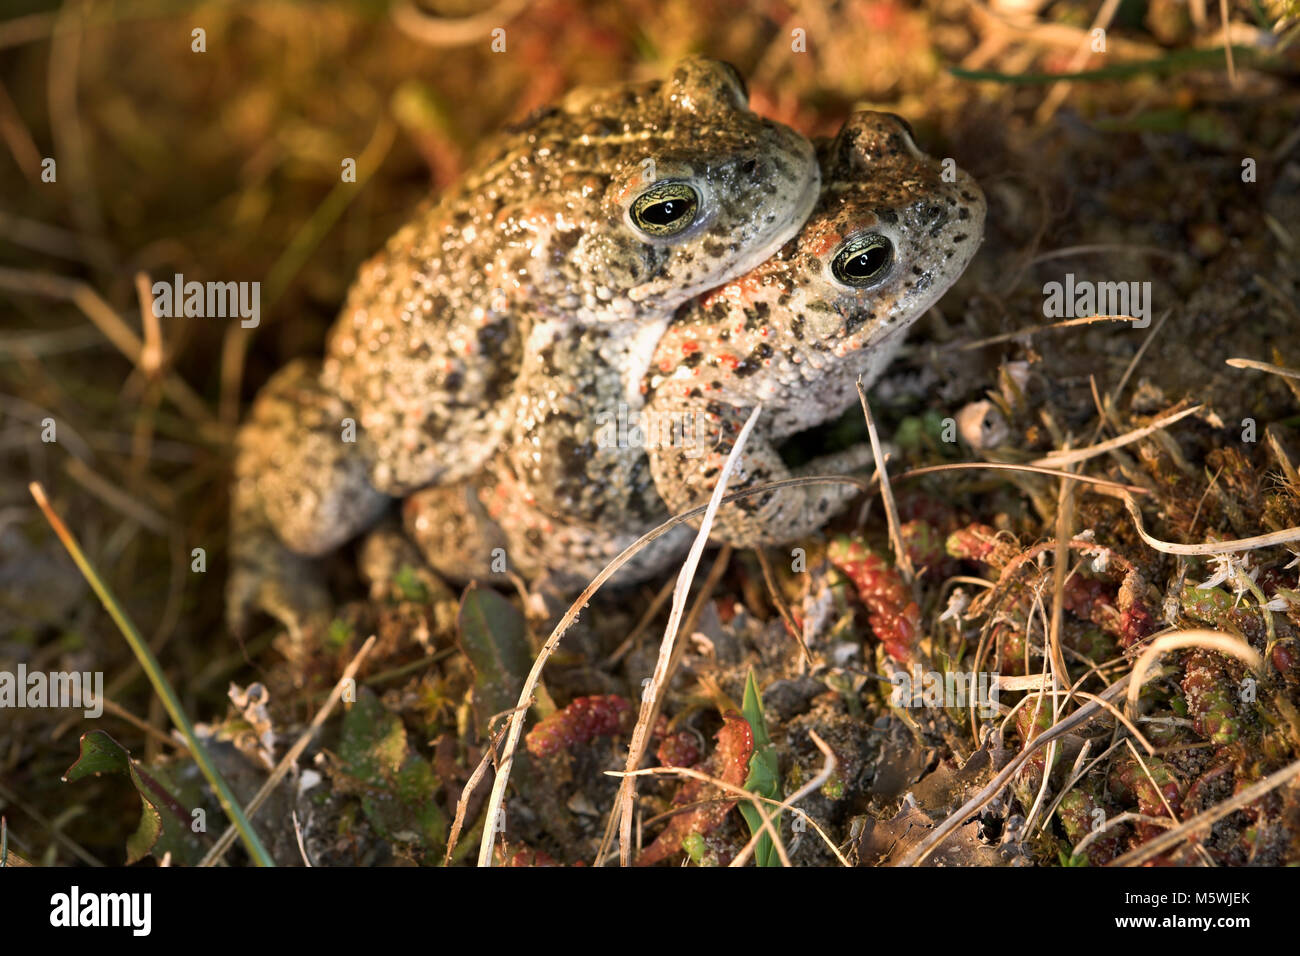 Natterjack Toad in amplexus Stock Photo